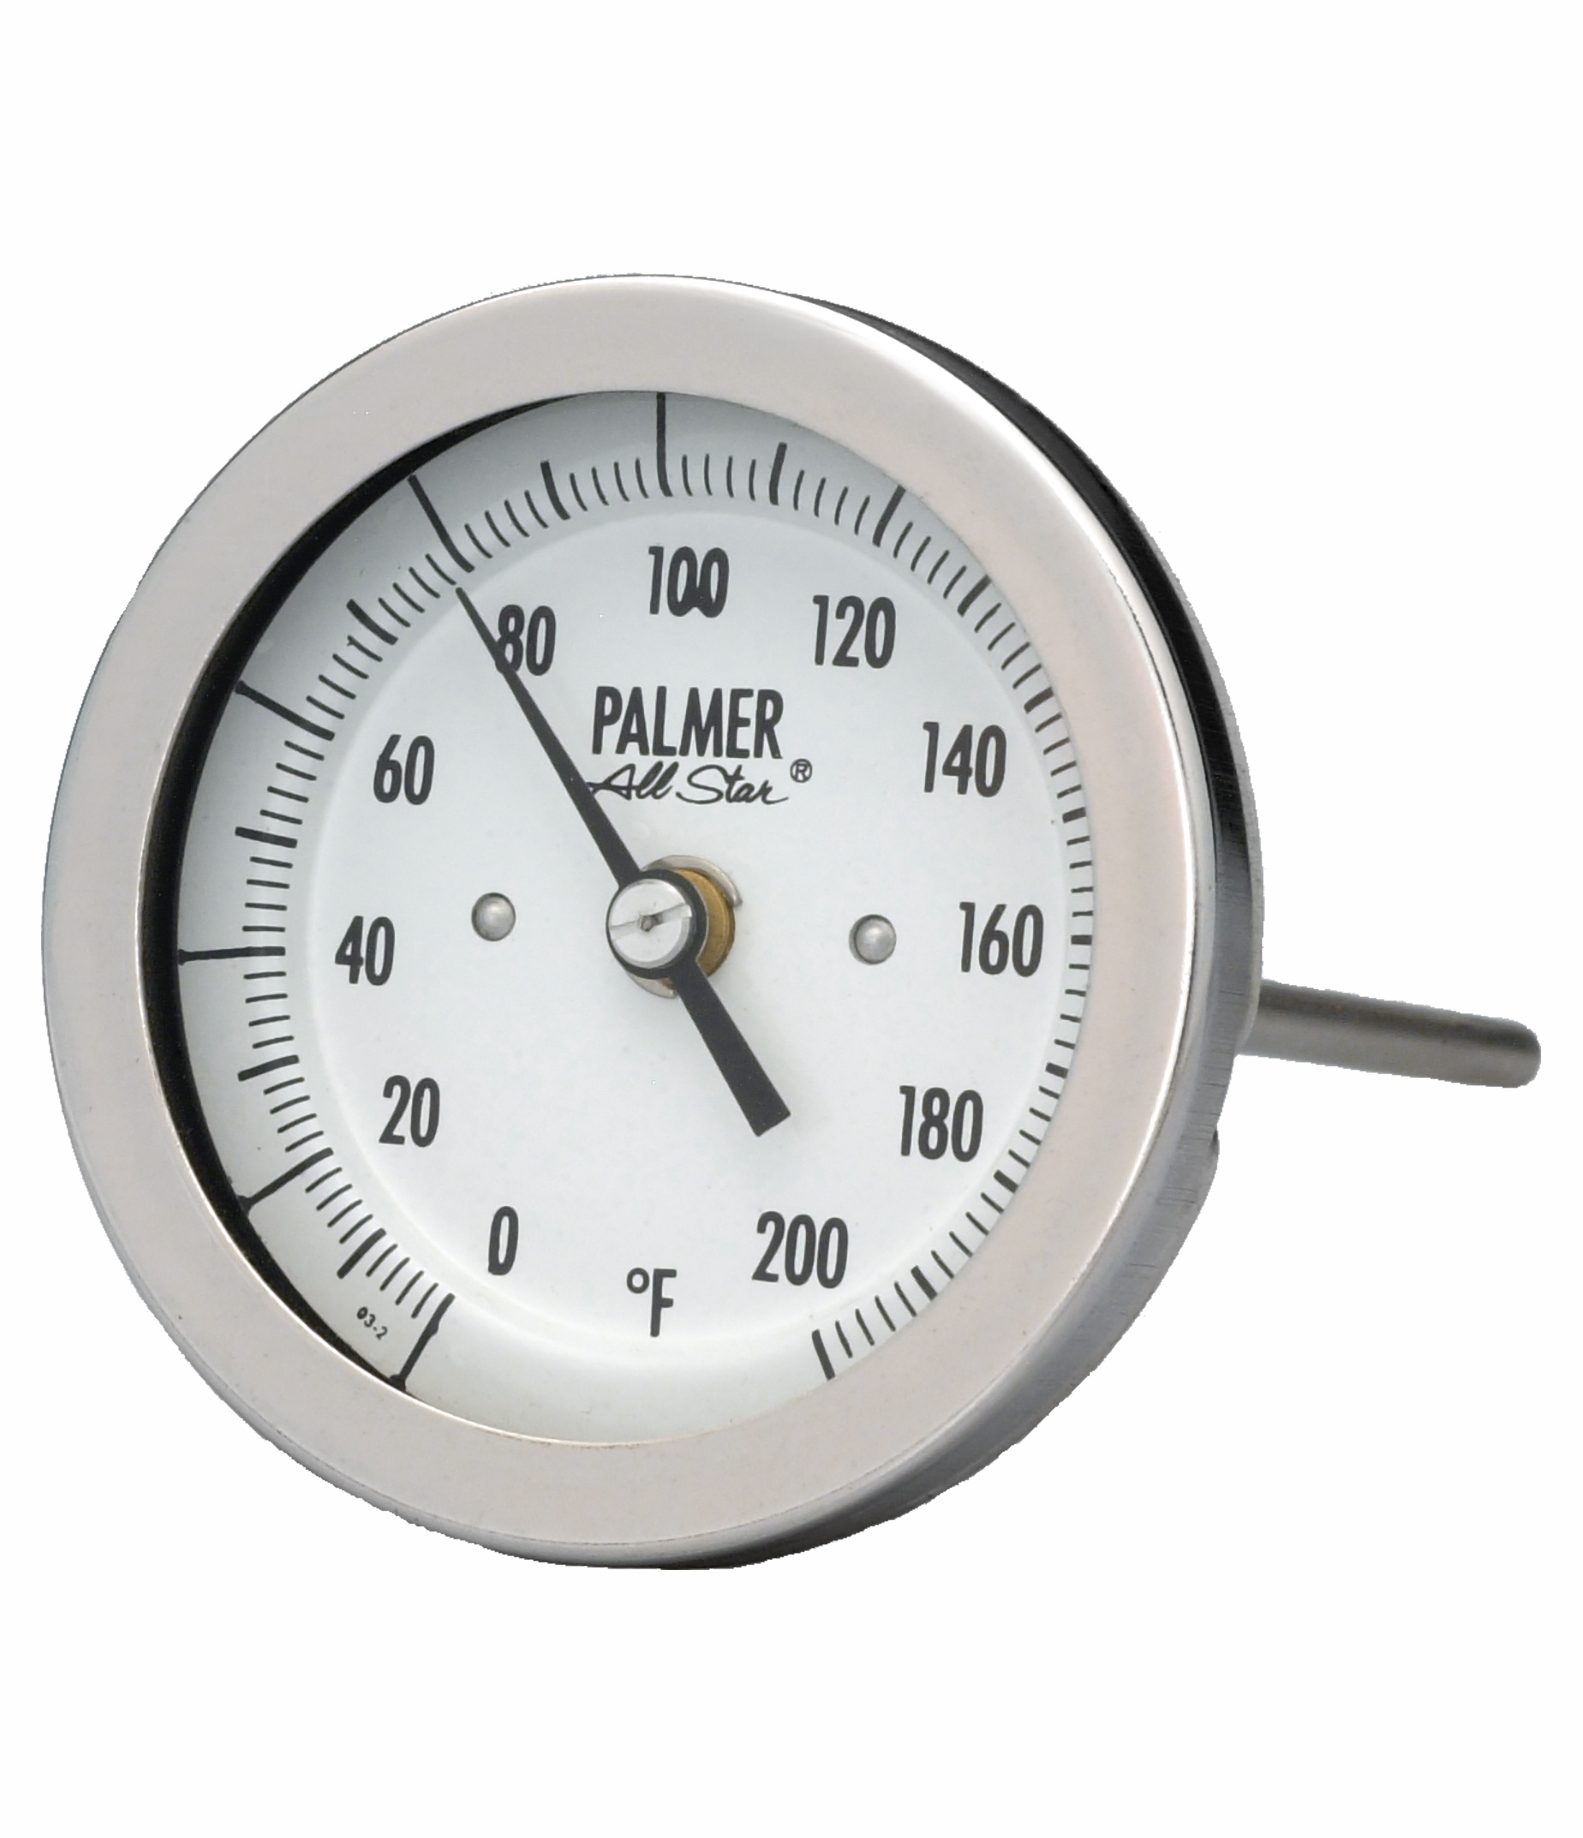 All Star Bimetal Thermometers